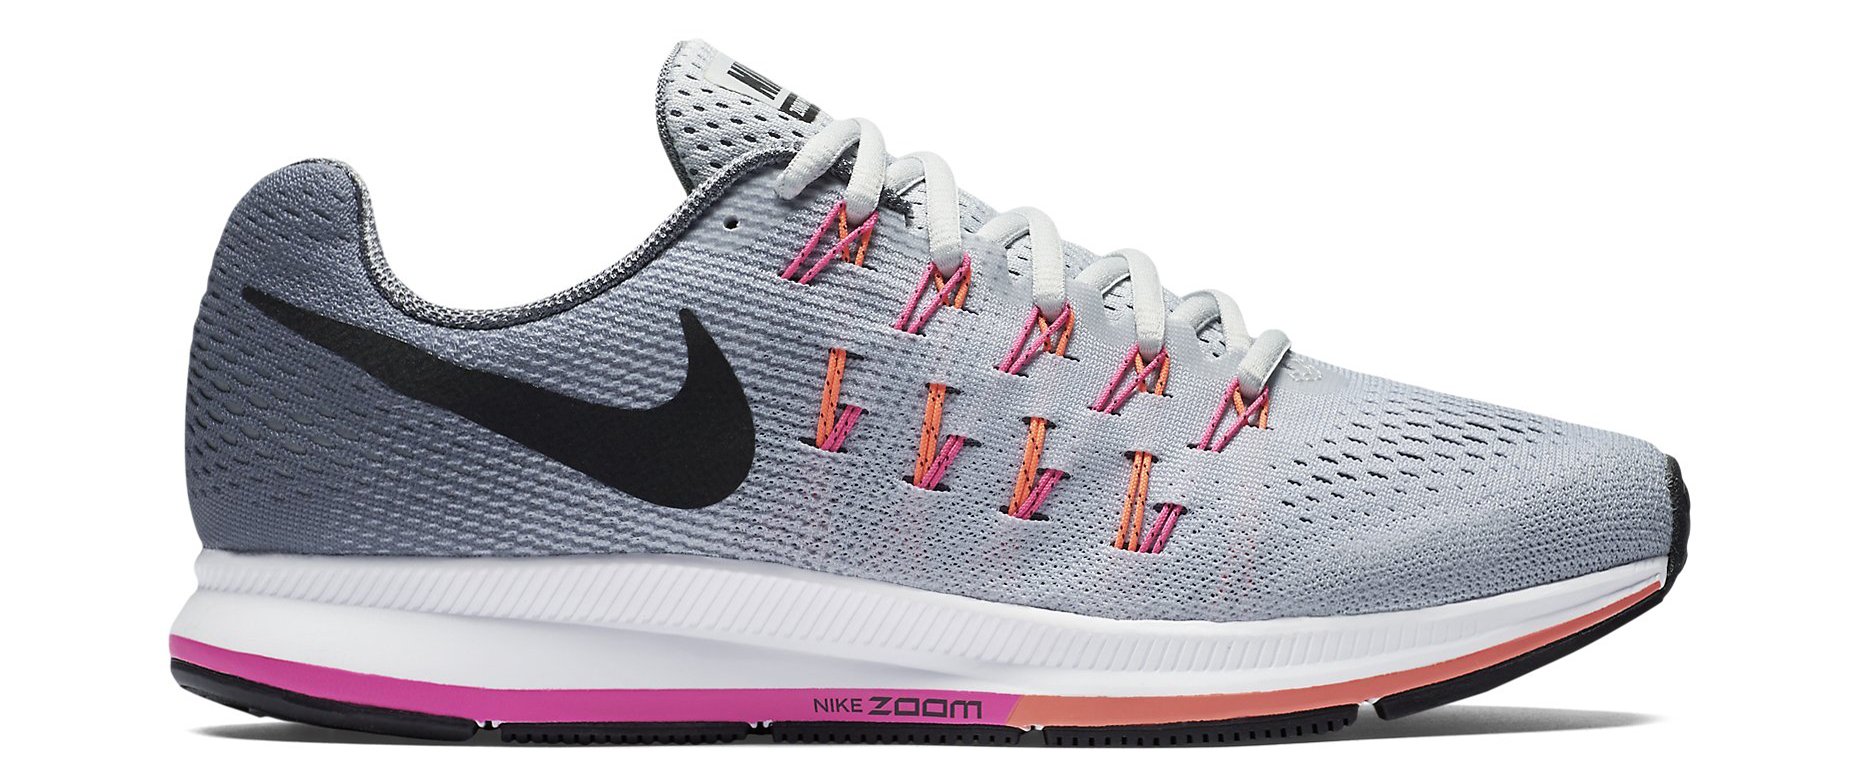 Dámská běžecká obuv Nike Air Zoom Pegasus 33 (široký)